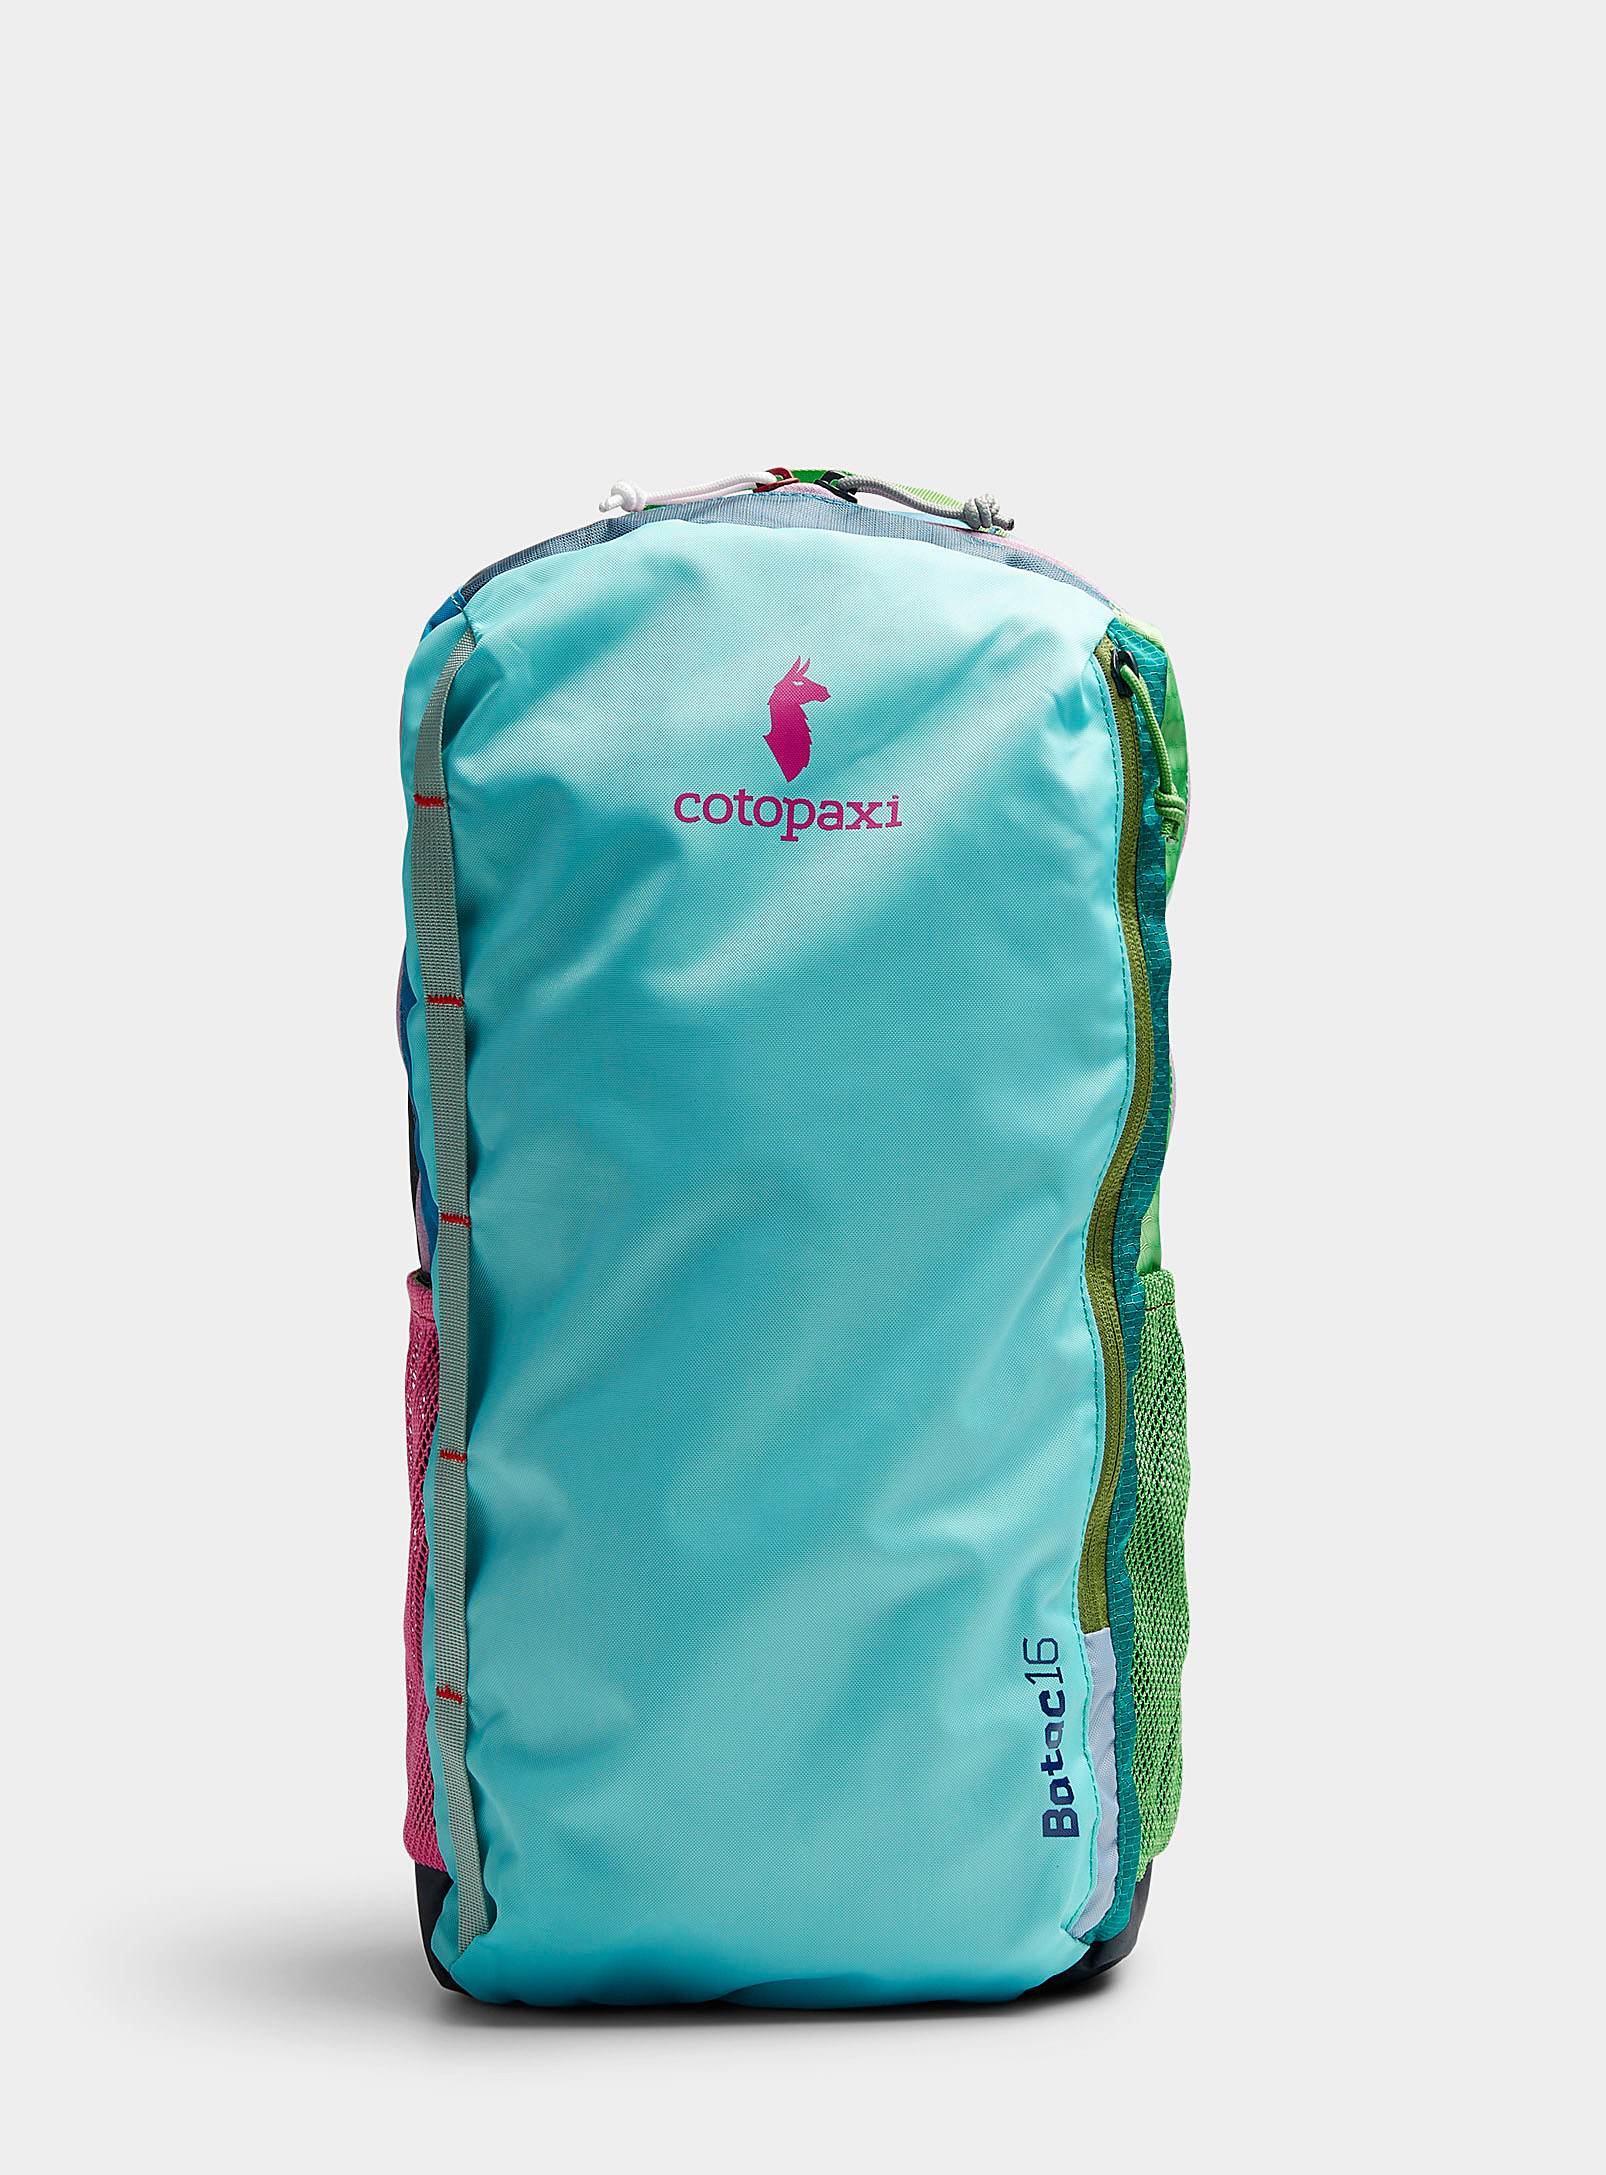 Cotopaxi - Le sac à dos 16L Batac Coloris uniques issus de la collection Del Da